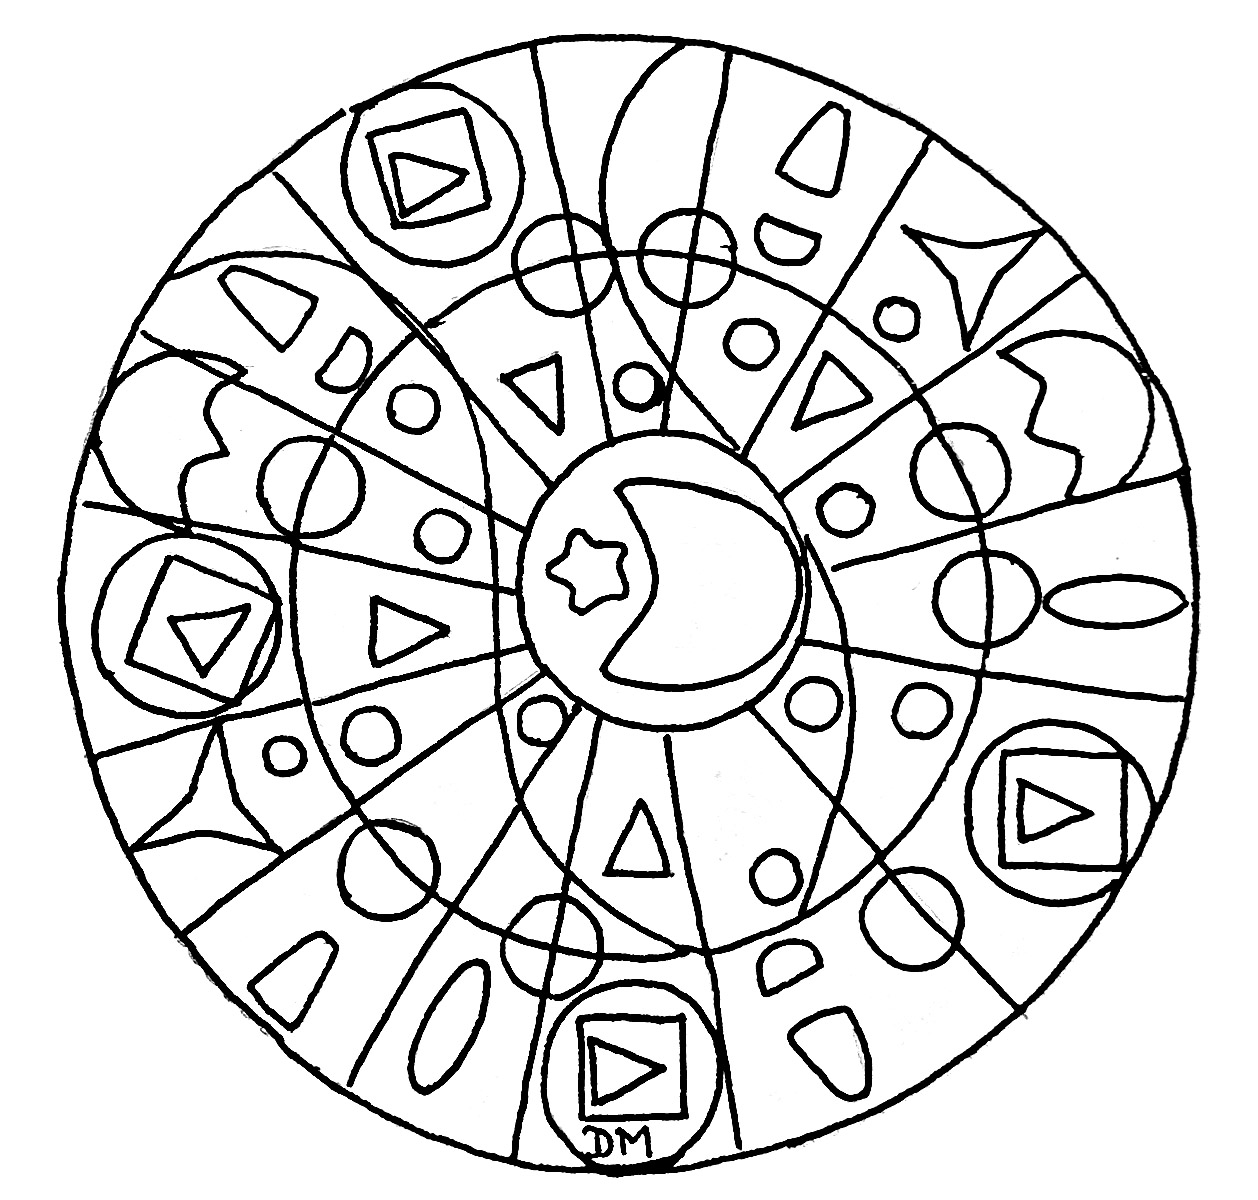 Si vous cherchez un Mandala aux formes simples pas trop compliqué à colorier, mais avec quand même un niveau de difficulté relatif, celui-ci est parfait pour vous.